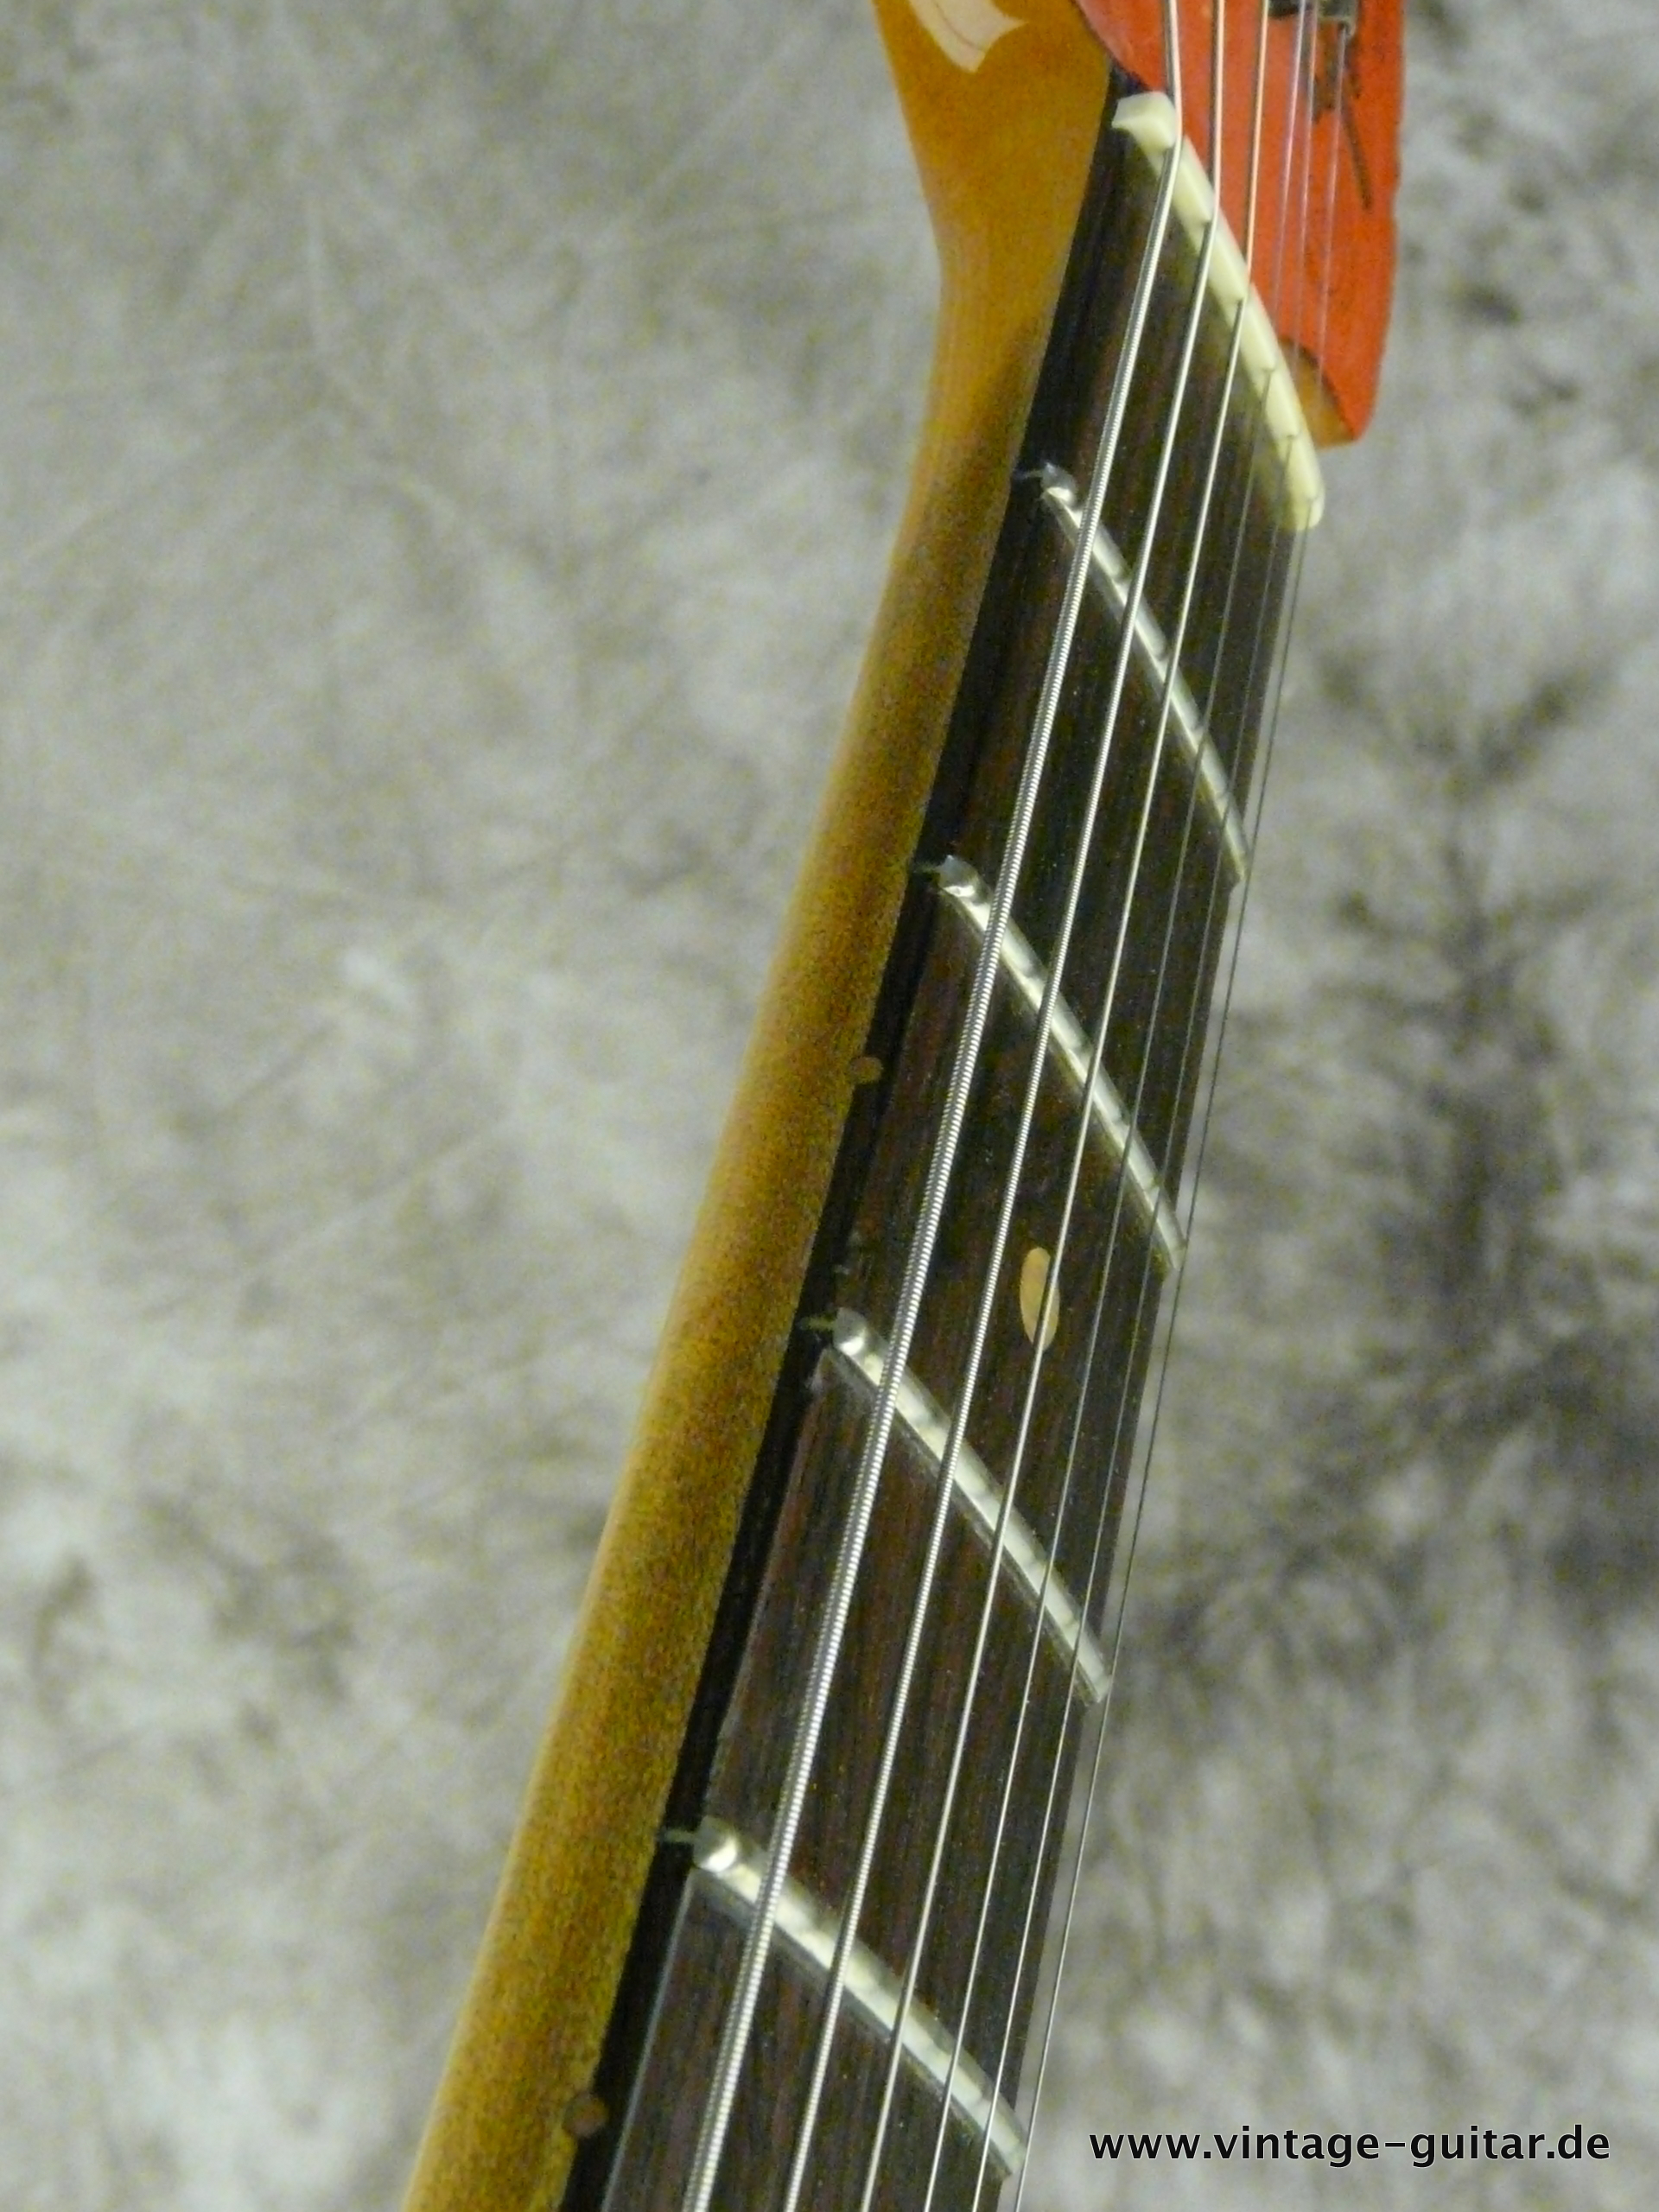 Fender-Jazzmaster-1964-refinished-fiesta-red-008.JPG